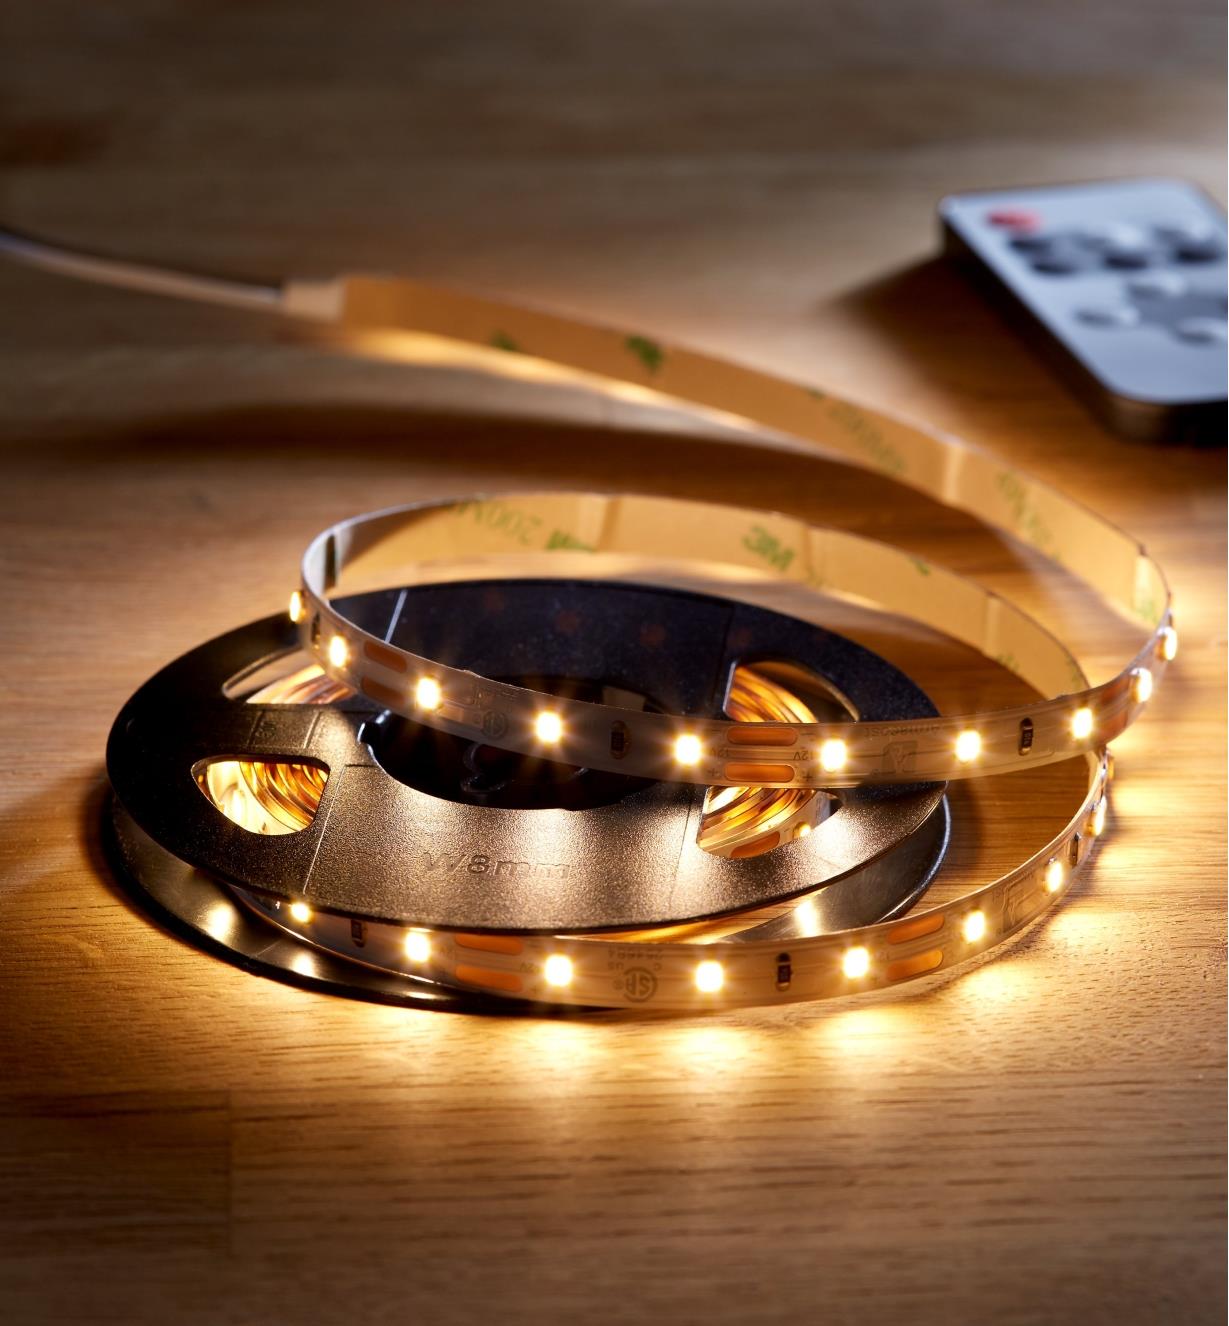 00U4619 - All-in-One LED Tape Lighting Kit